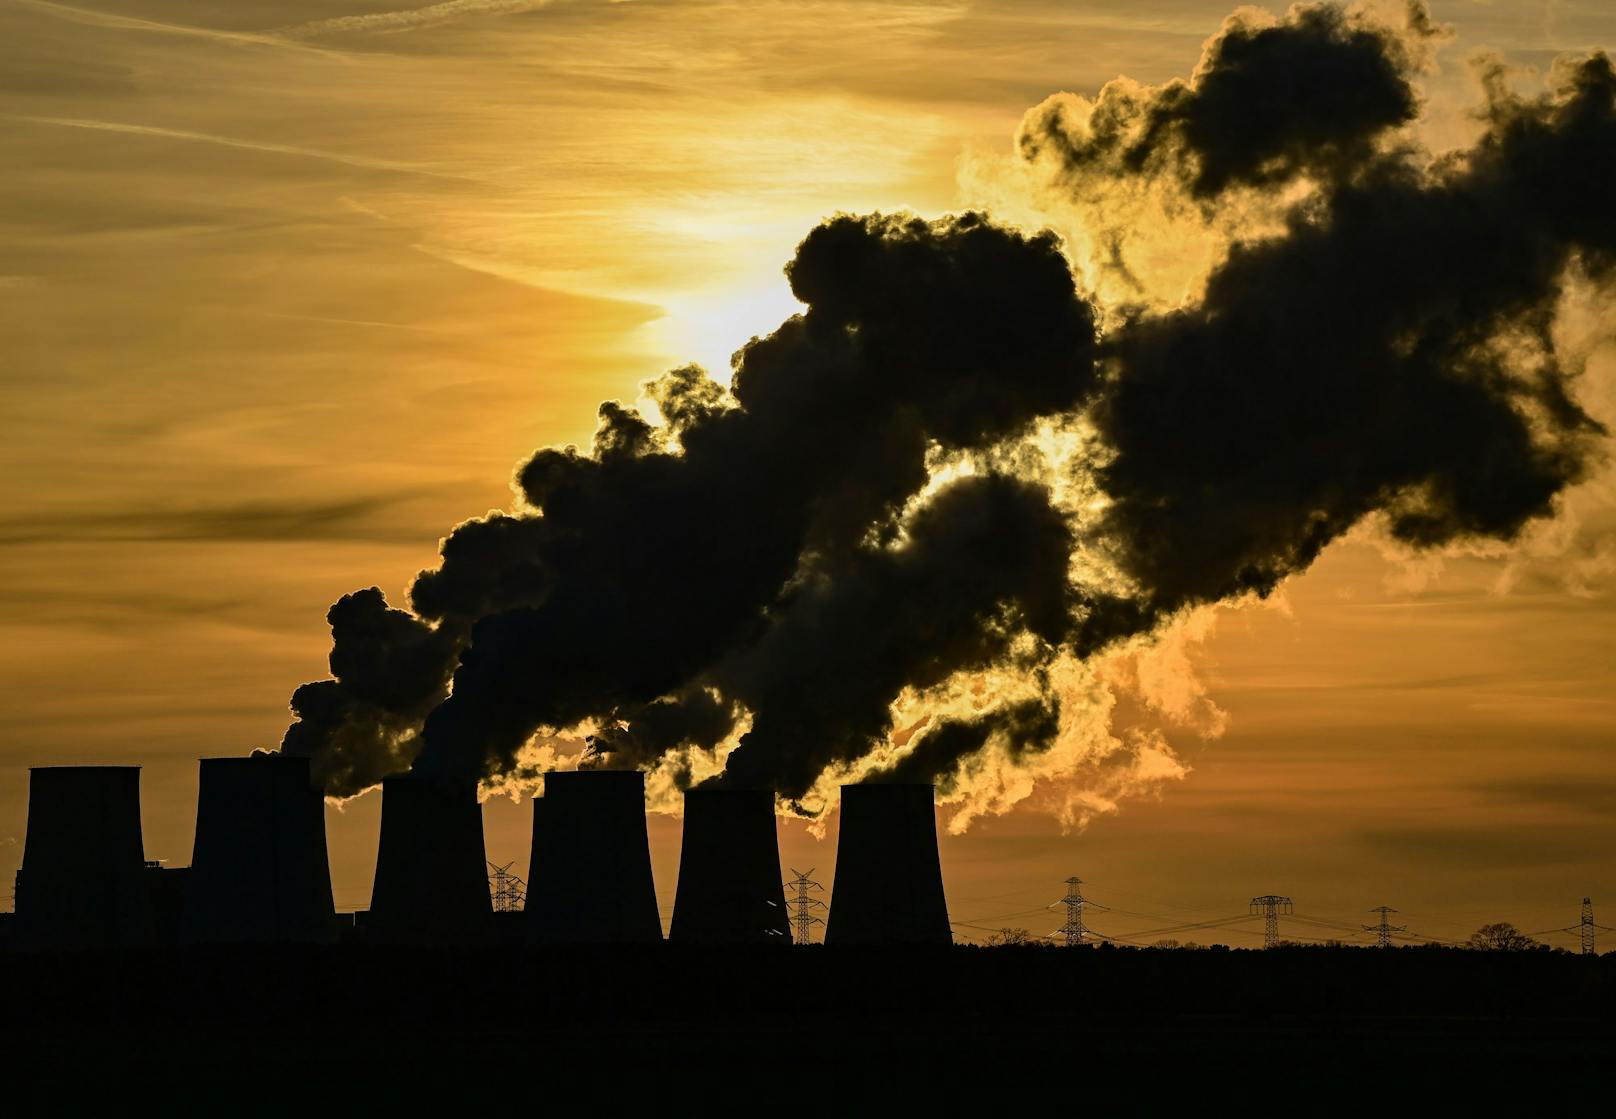 Kohleverbrauch treibt CO2-Ausstoß 2021 auf Höchststand